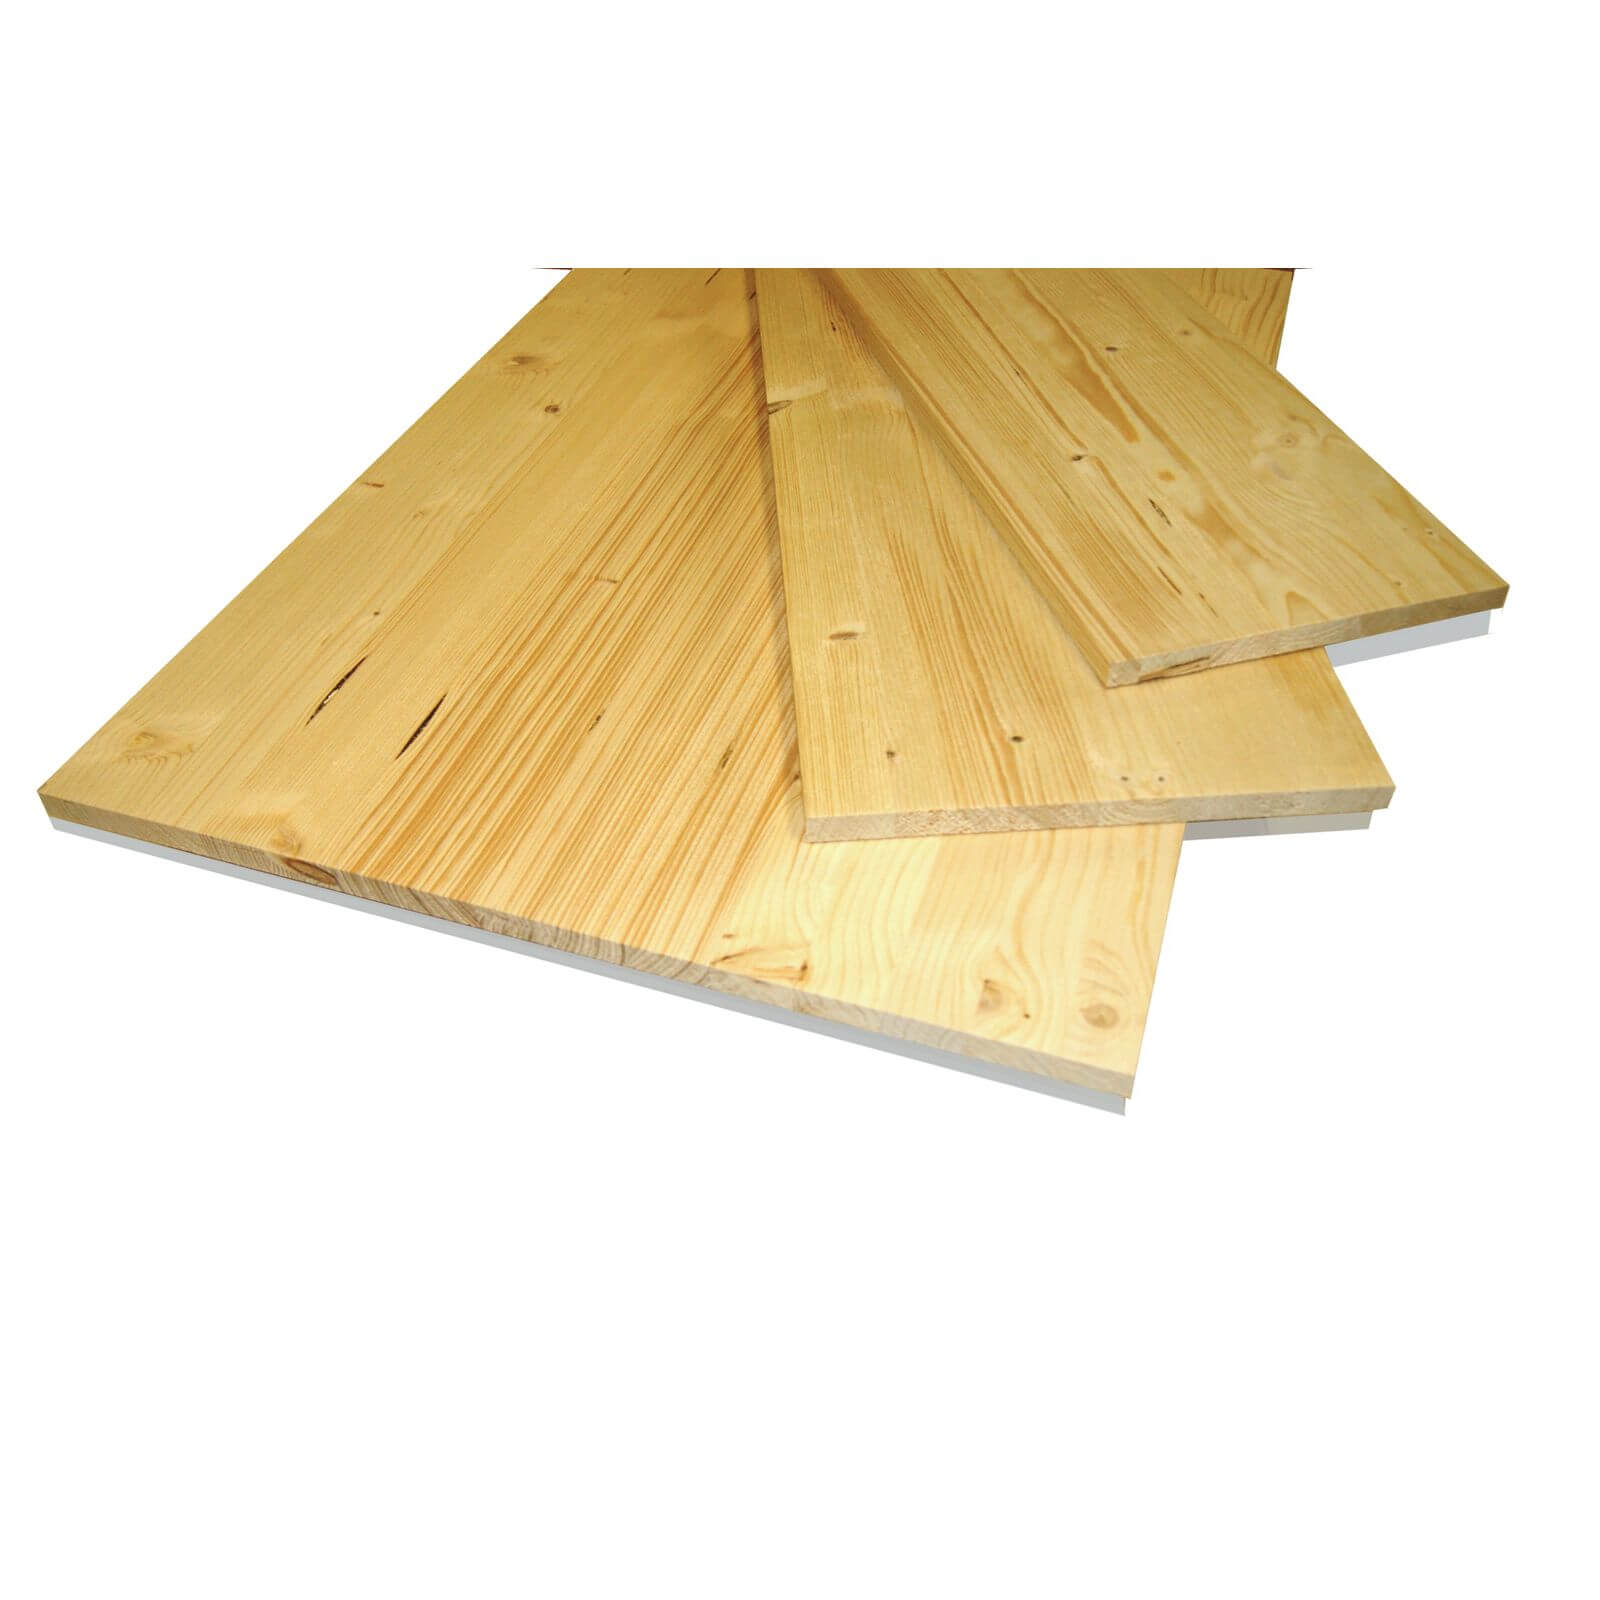 Metsa Wood Solid Spruce Wooden Panel Board 0.85m (18 x 300 x 850mm)